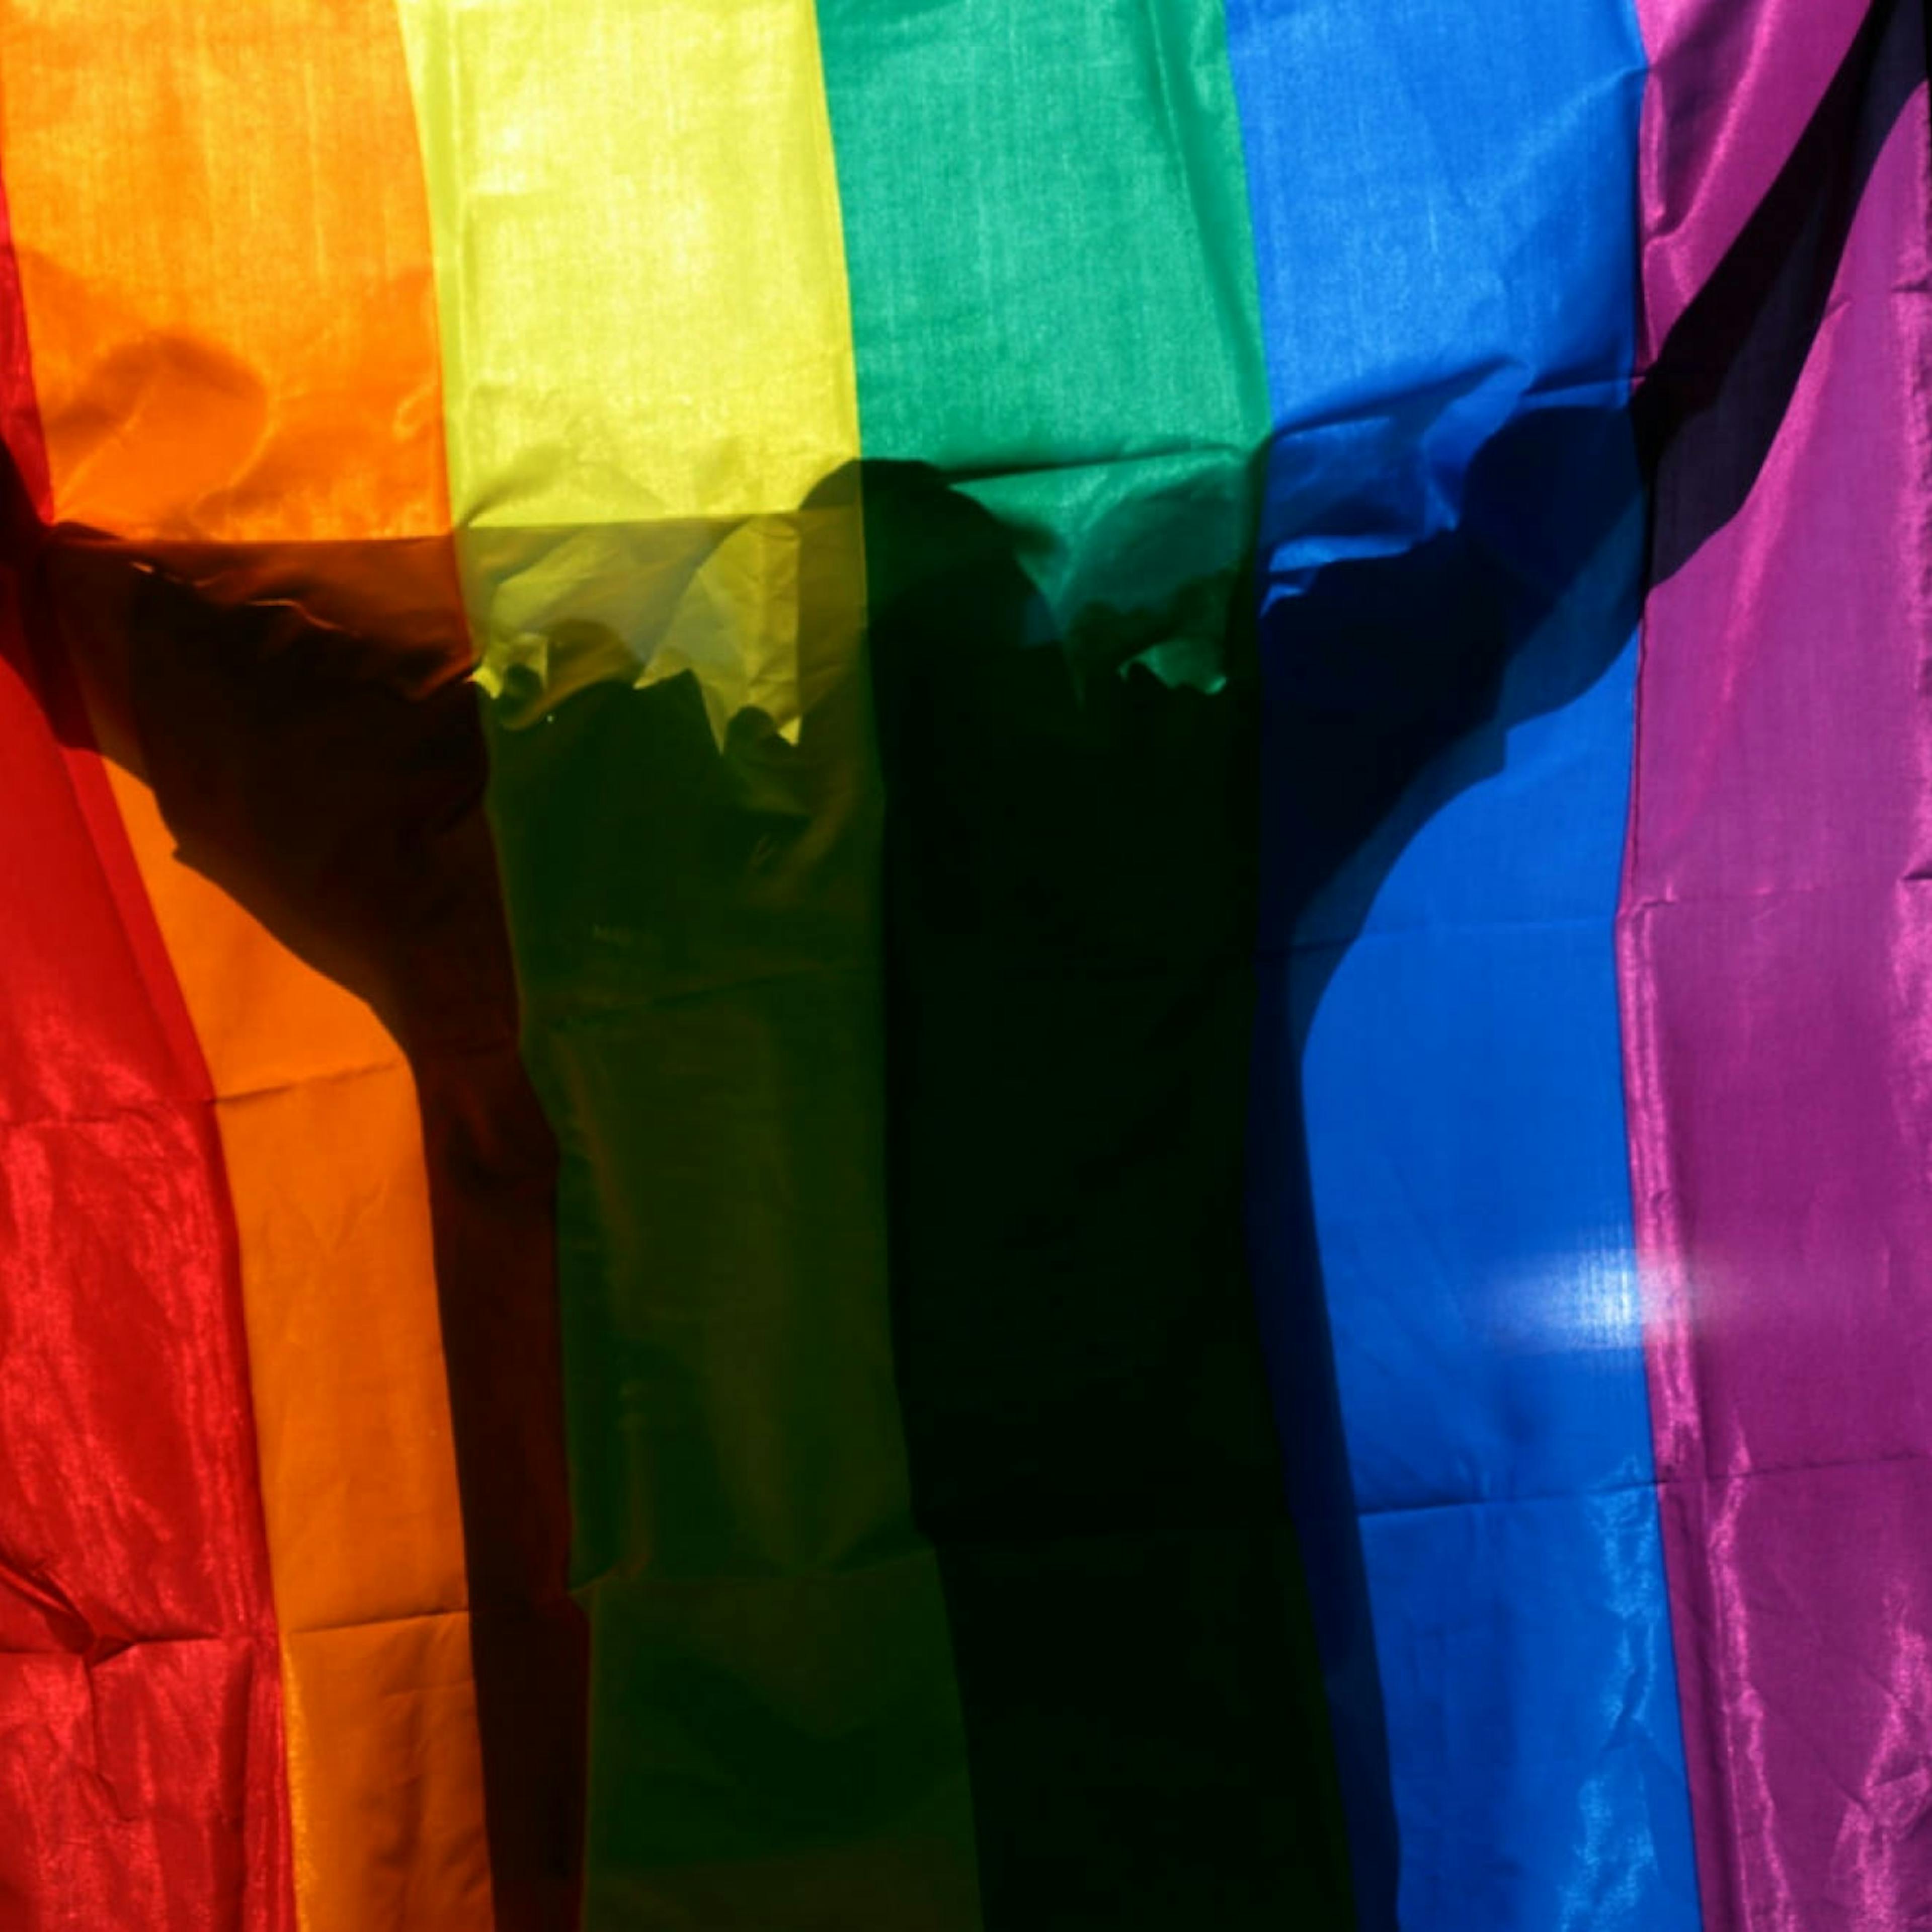 An LGBTQ+ person hides behind a rainbow flag.